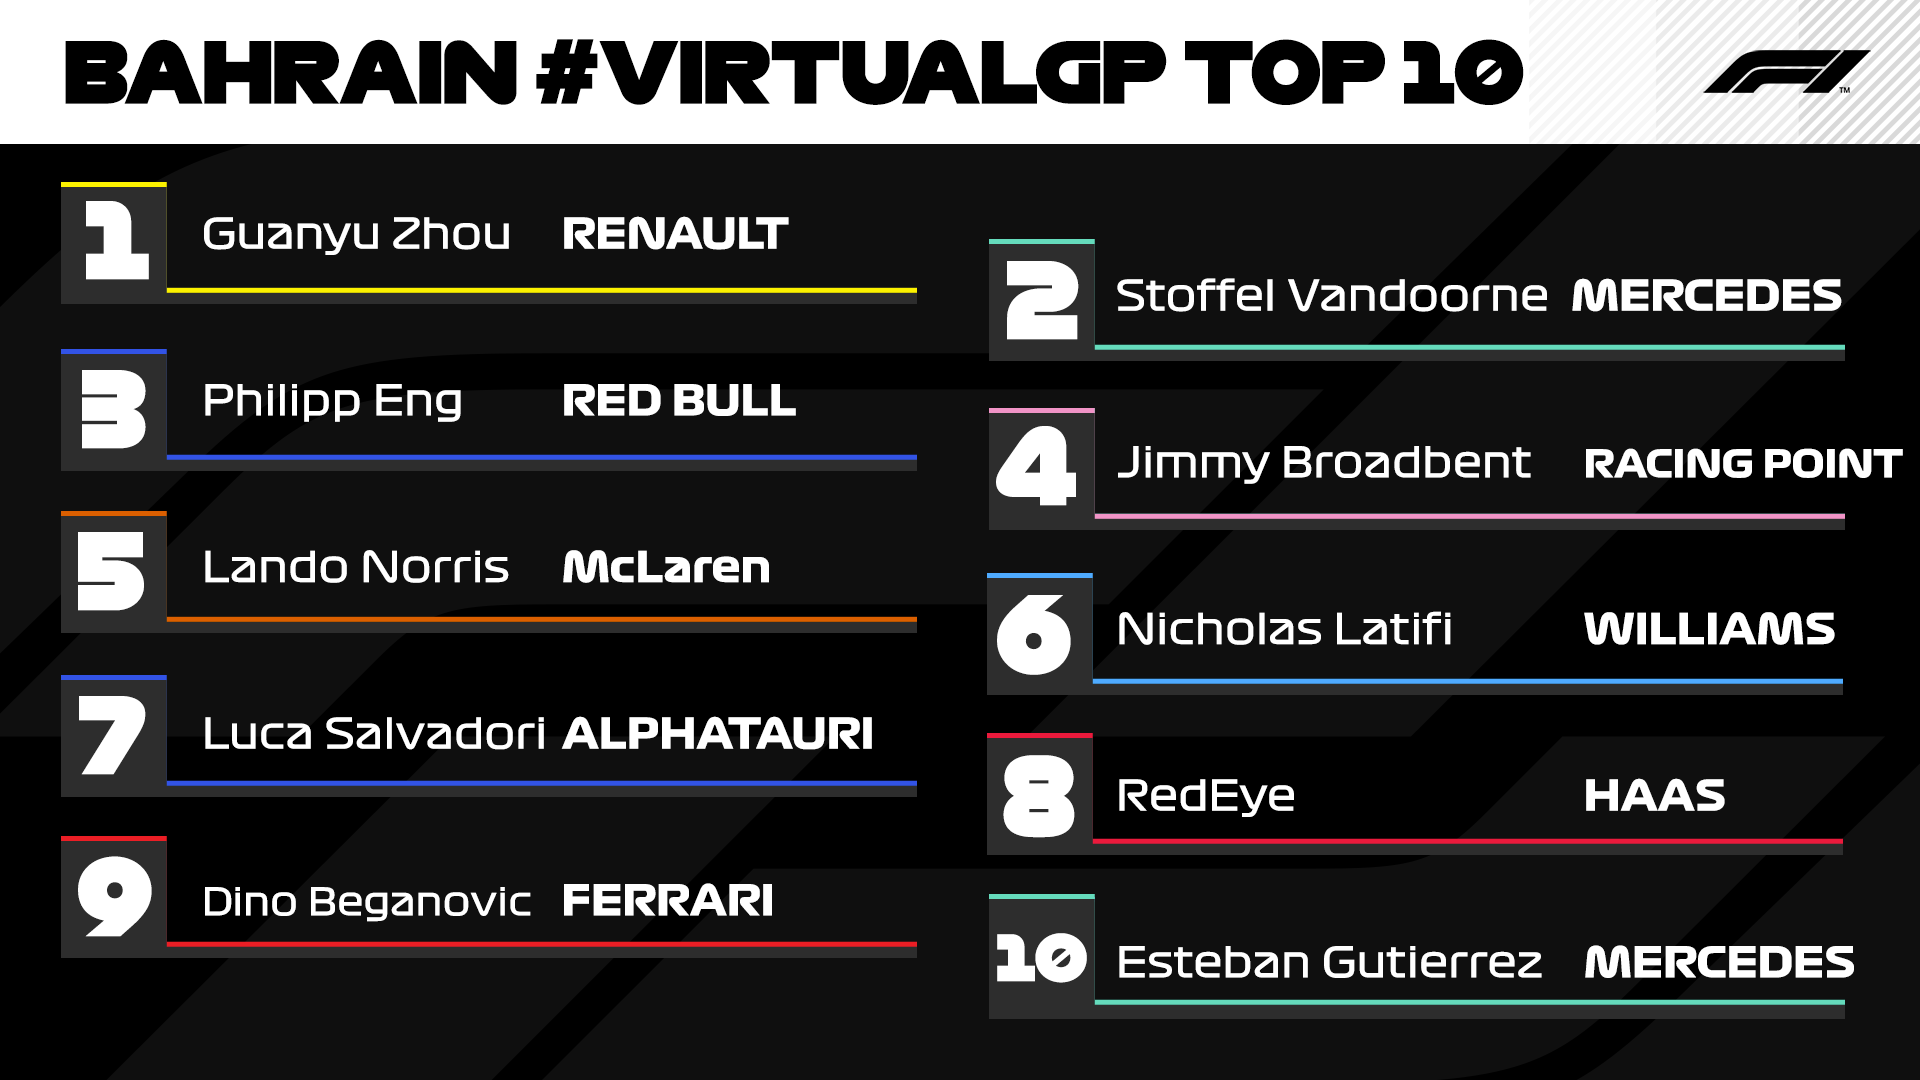 Bahrain virtual GP Top 10